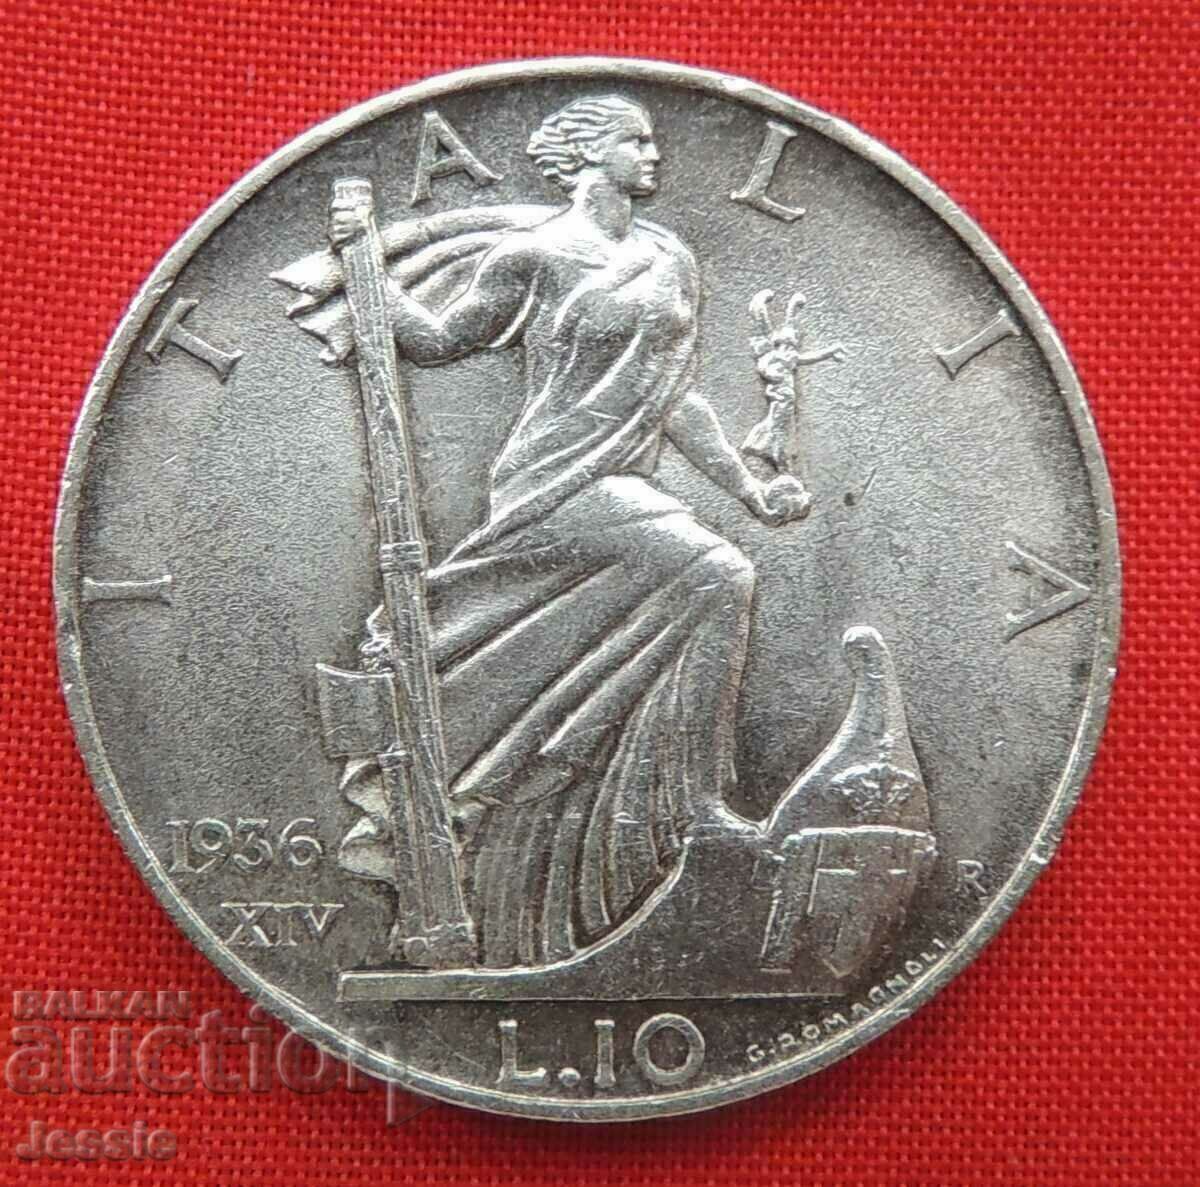 10 λιρέτες 1936 Ιταλία